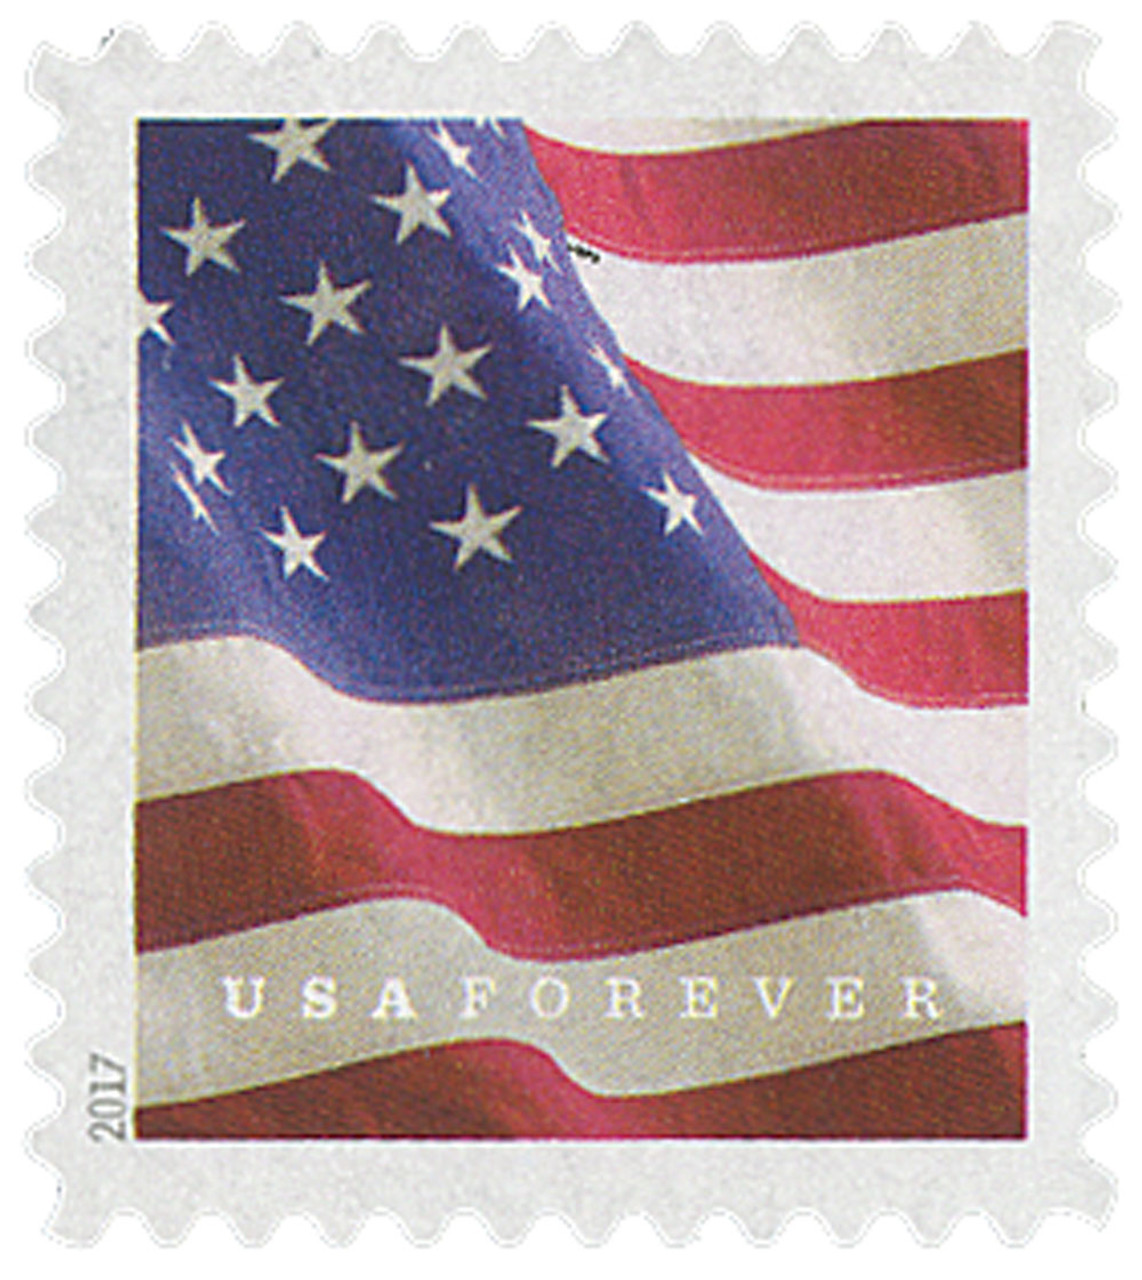 Flag forever stamp ATM pane a good buy